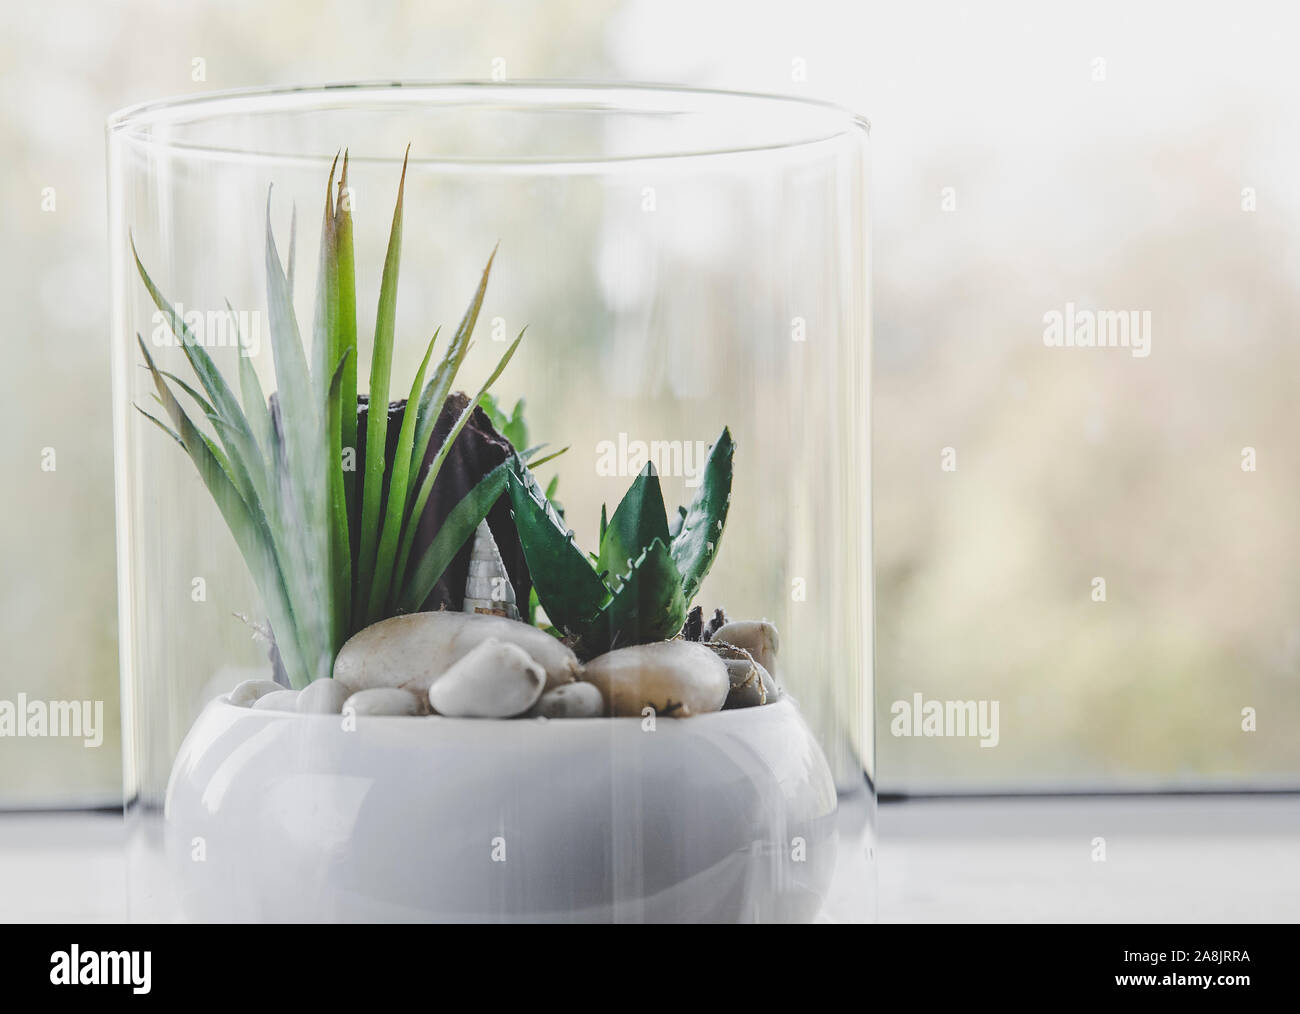 Petit verre de table moderne pour les plantes de terrarium ouvert sur l'appui de fenêtre dans la lumière naturelle. Copie de l'espace. Selective focus et blur bokeh background. Banque D'Images